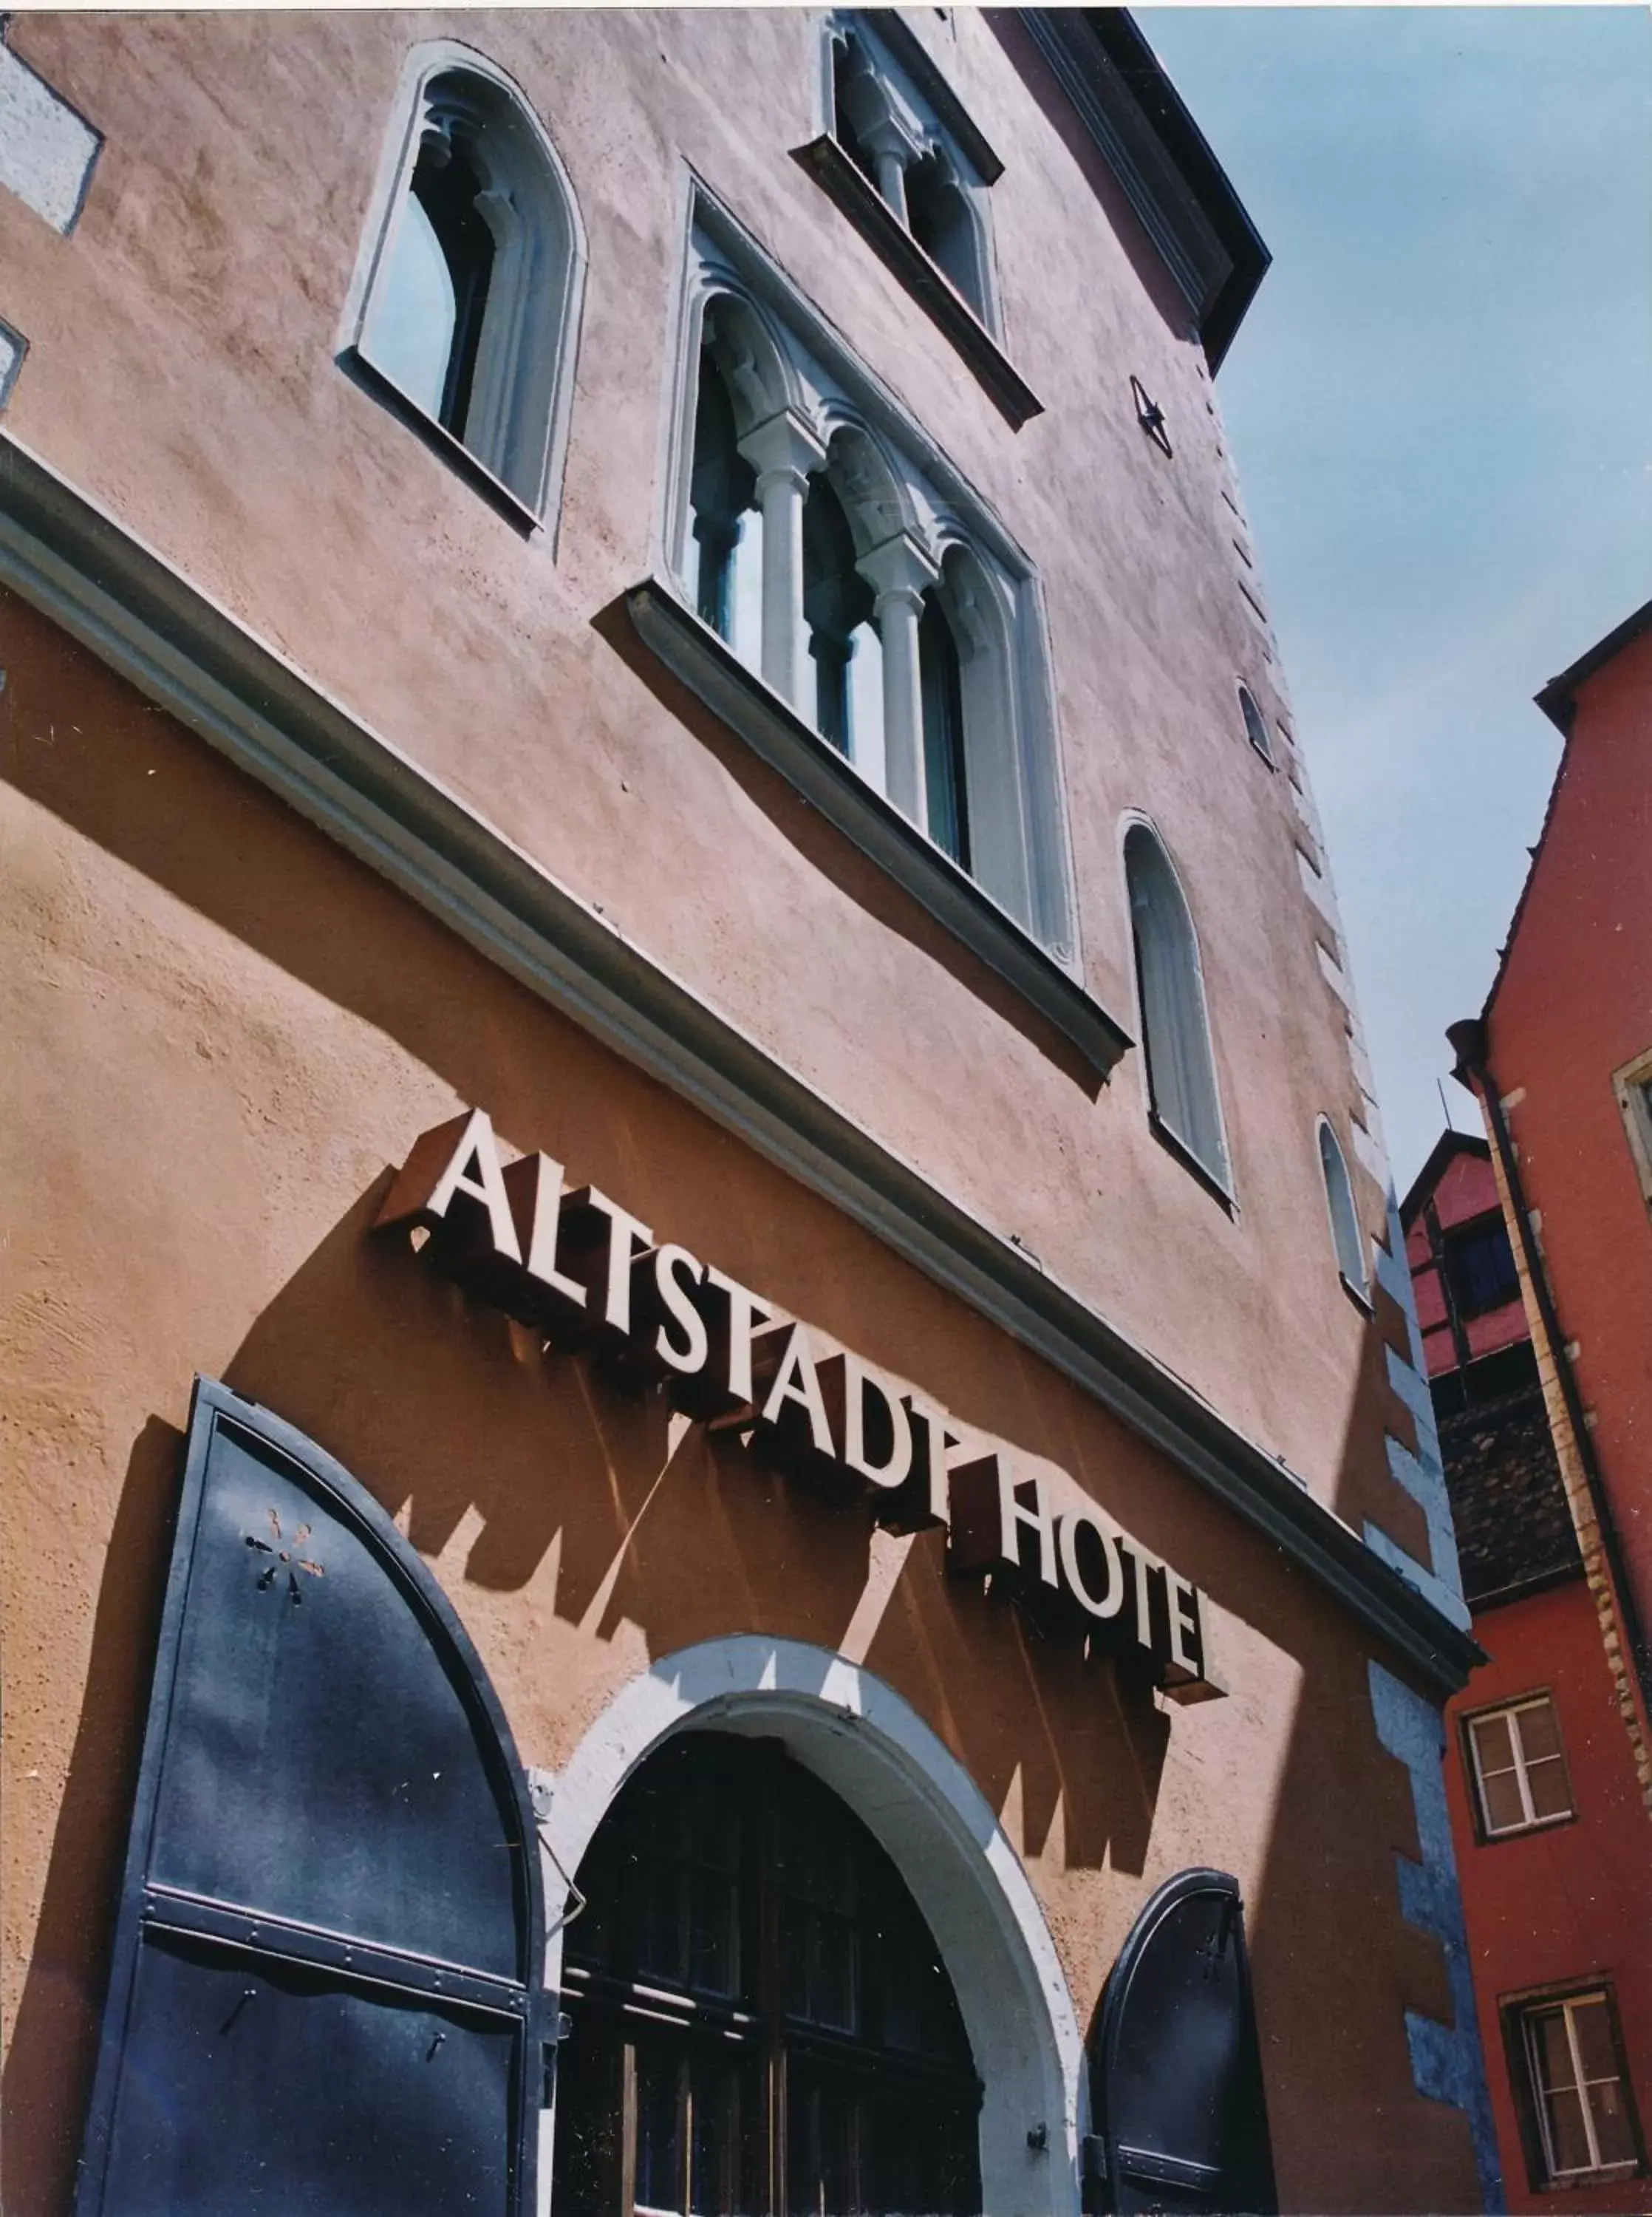 Property Building in Altstadthotel Arch